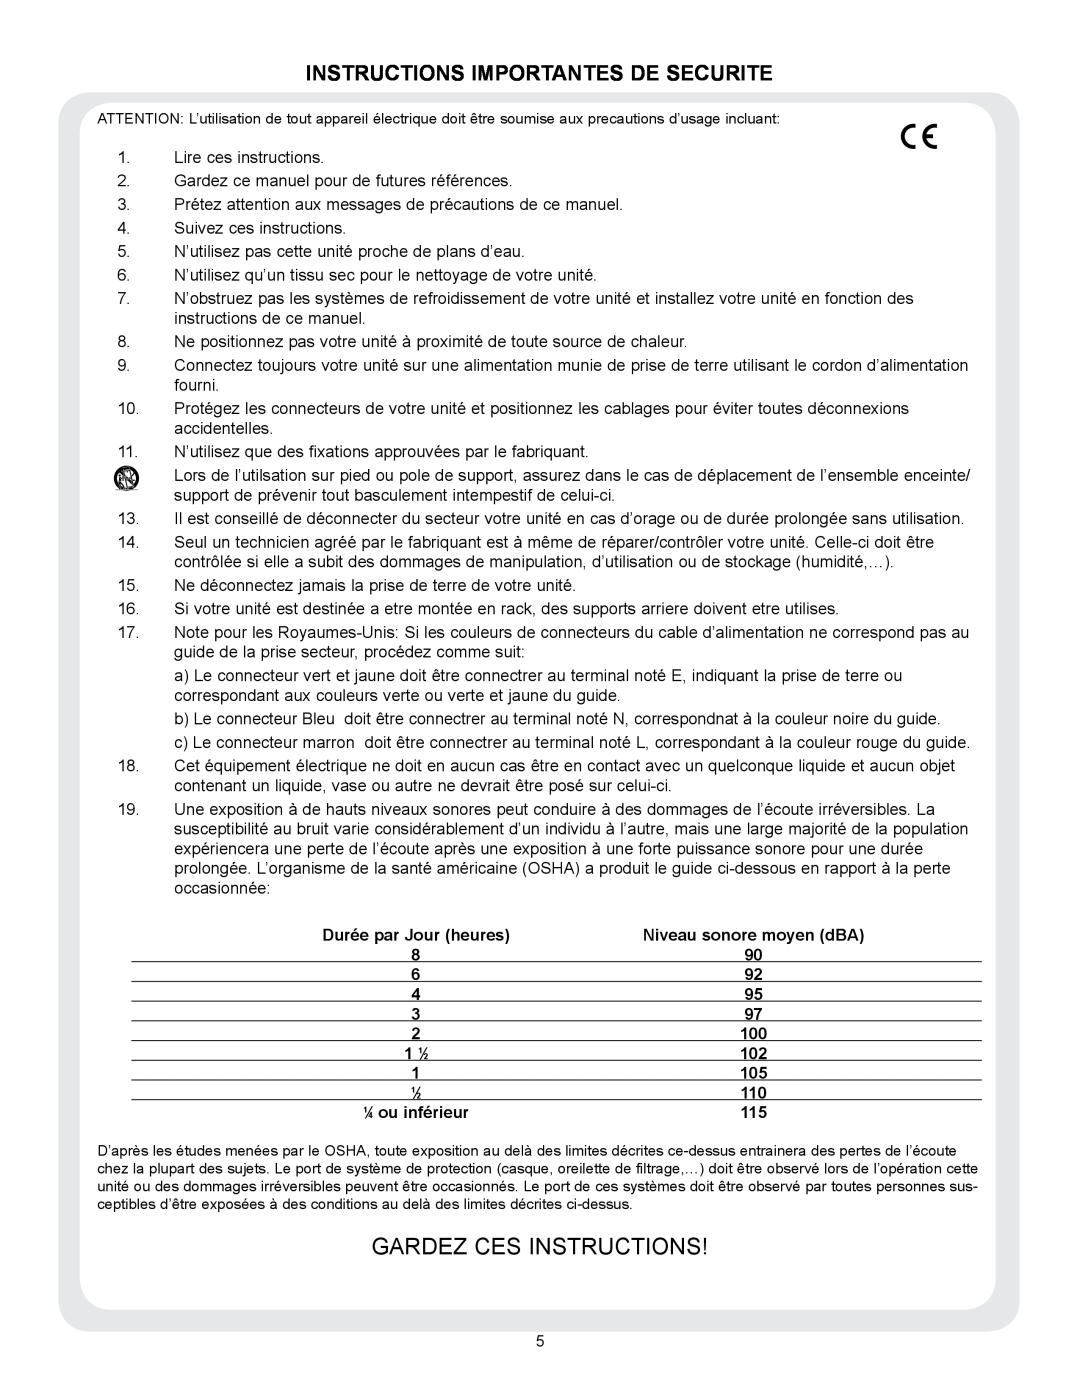 Peavey VSX 48 manual Gardez Ces Instructions, Instructions Importantes De Securite 